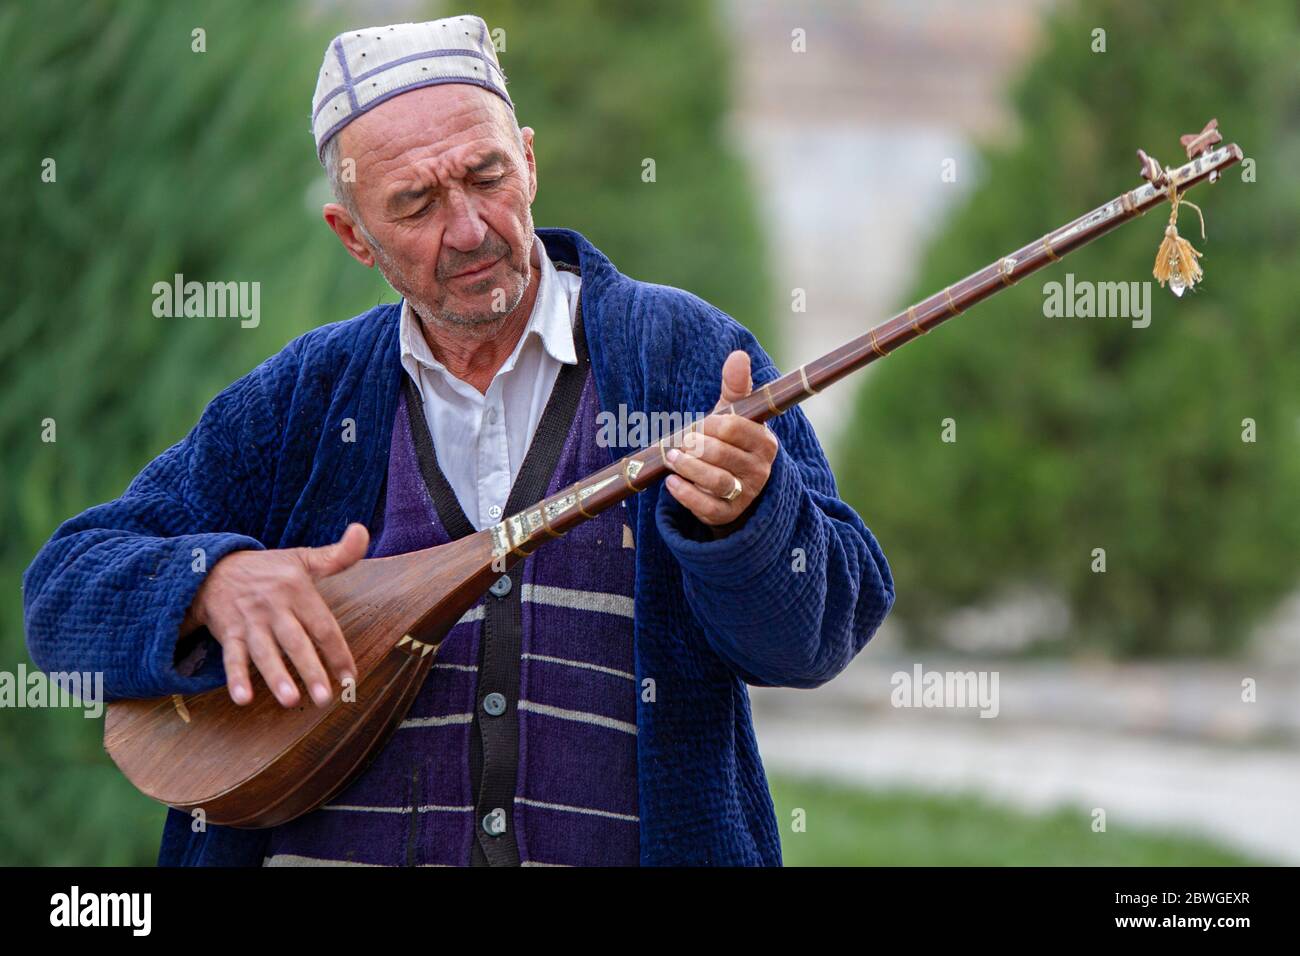 Ouzbek jouant un instrument de musique local, connu sous le nom de Dutar, à Samarkand, Ouzbékistan Banque D'Images